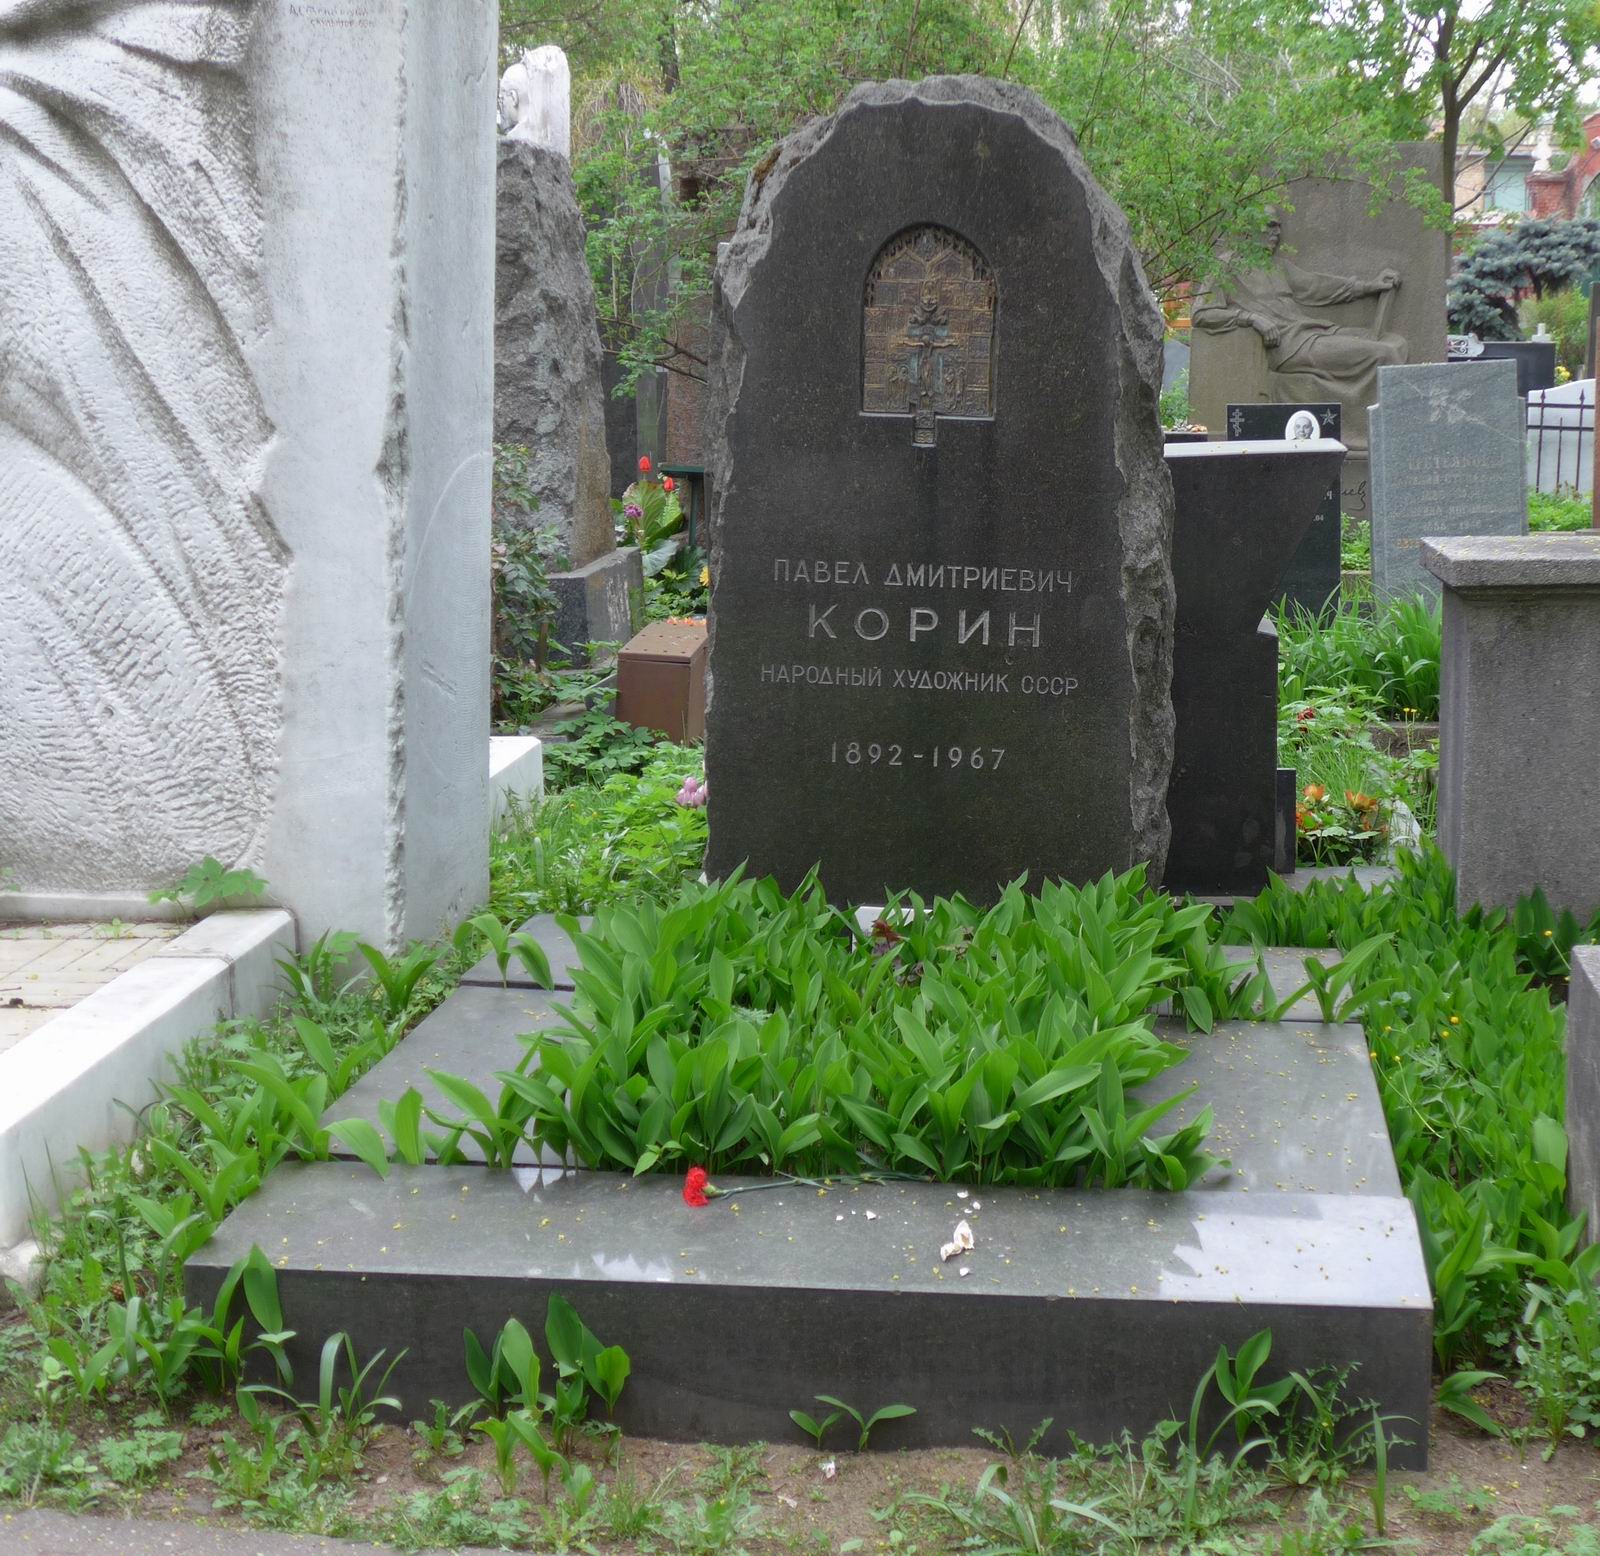 Памятник на могиле Корина П.Д. (1892-1967), арх. О.Великорецкий, на Новодевичьем кладбище (1-22-7).